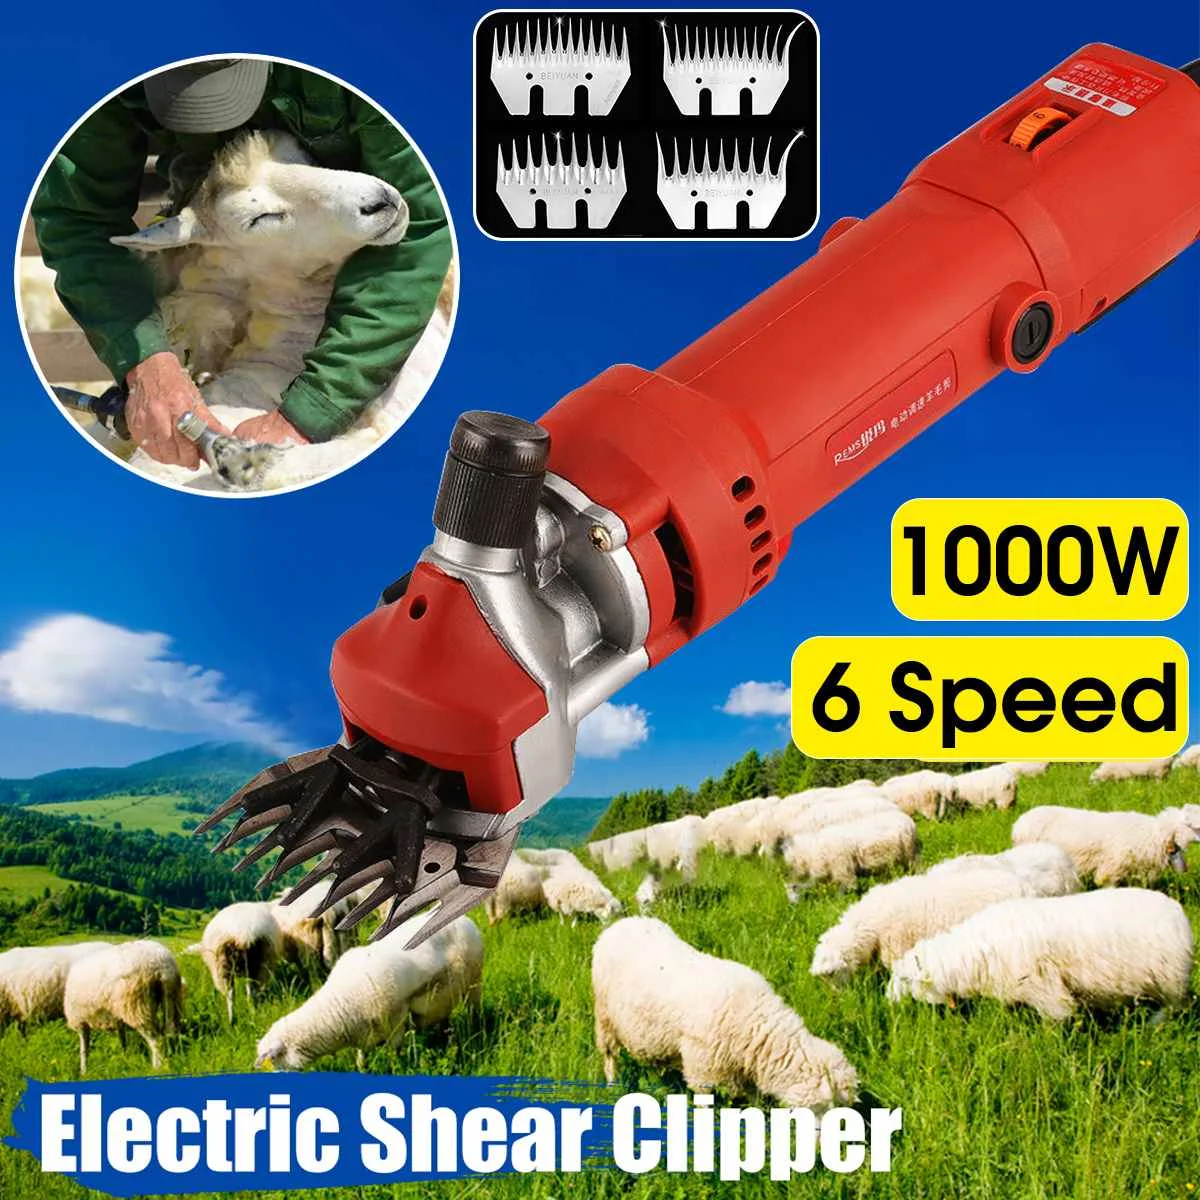 

1000W 220V 2400R/Min Electric Shearing Clipper Shear Sheep Goats Alpaca Shears Pet Hair Shearing Machine Cutter Wool Scissor